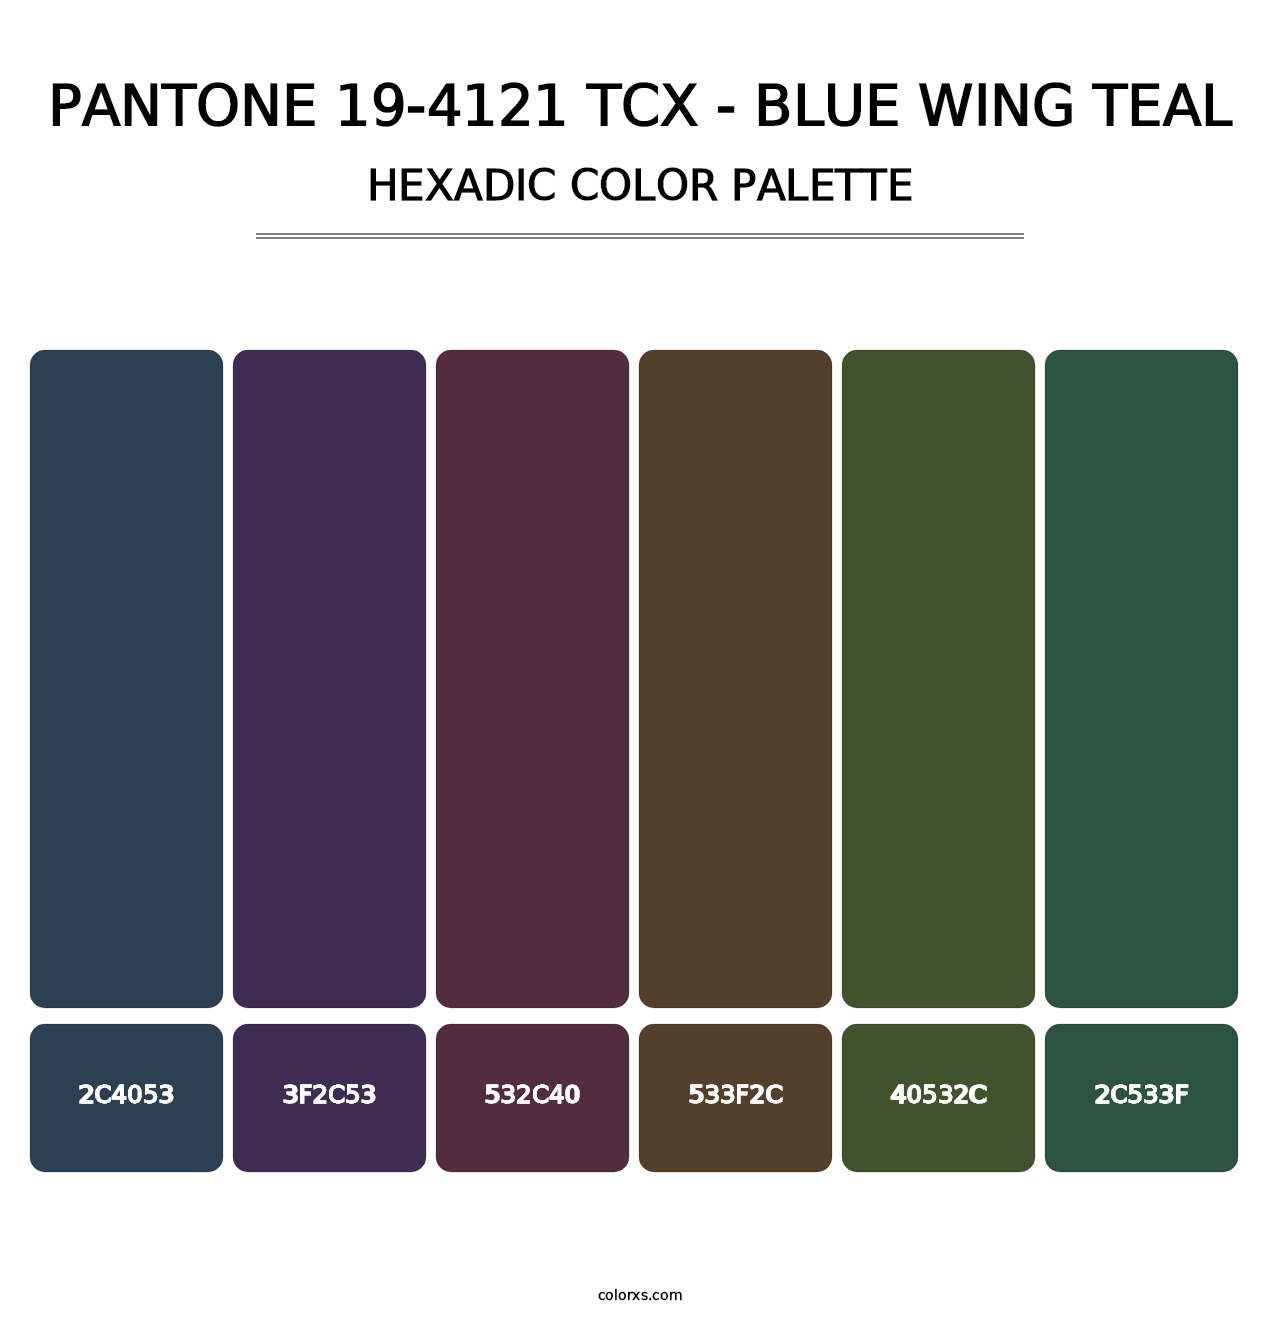 PANTONE 19-4121 TCX - Blue Wing Teal - Hexadic Color Palette